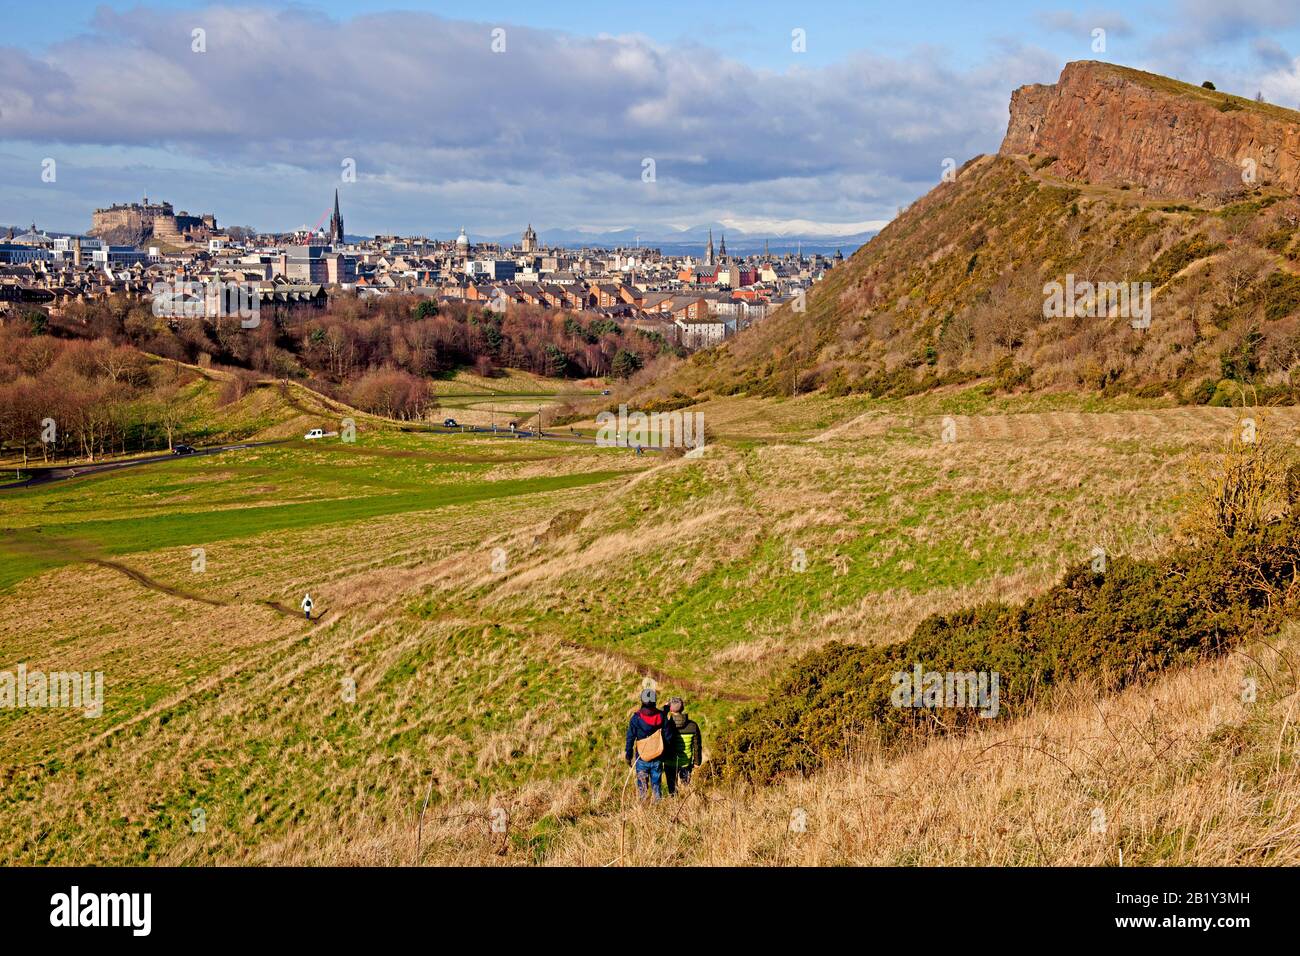 Holyrood Park, Touristen mit Blick auf Salisbury Crags und City of Edinburgh im Hintergrund, Schottland, Großbritannien und Großbritannien Stockfoto